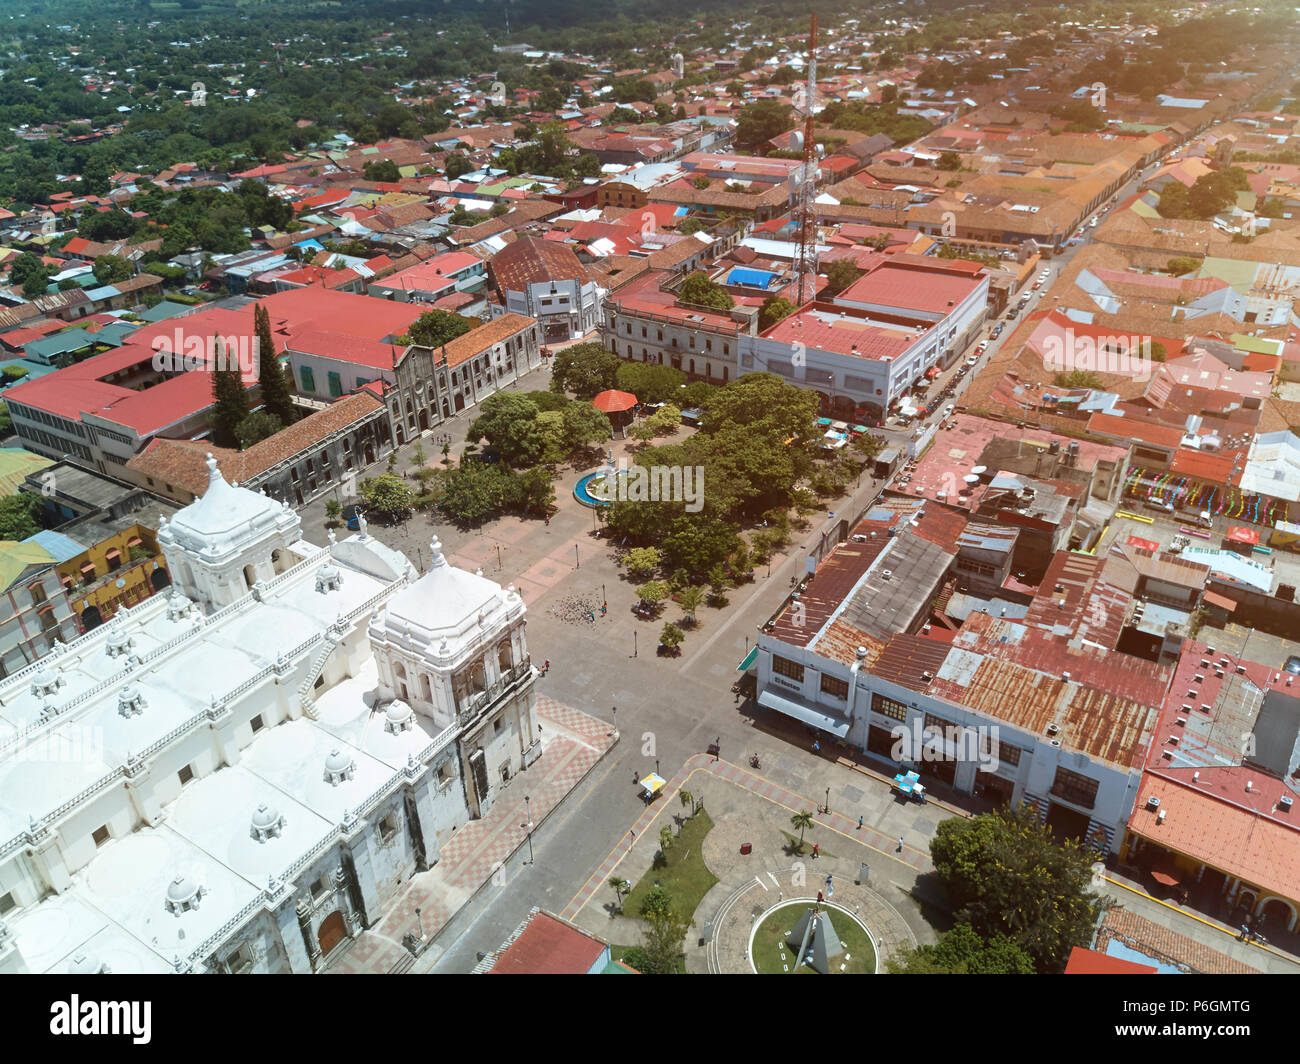 Main square of Leon city in Nicaragua drone view. Leon cityscape Stock Photo